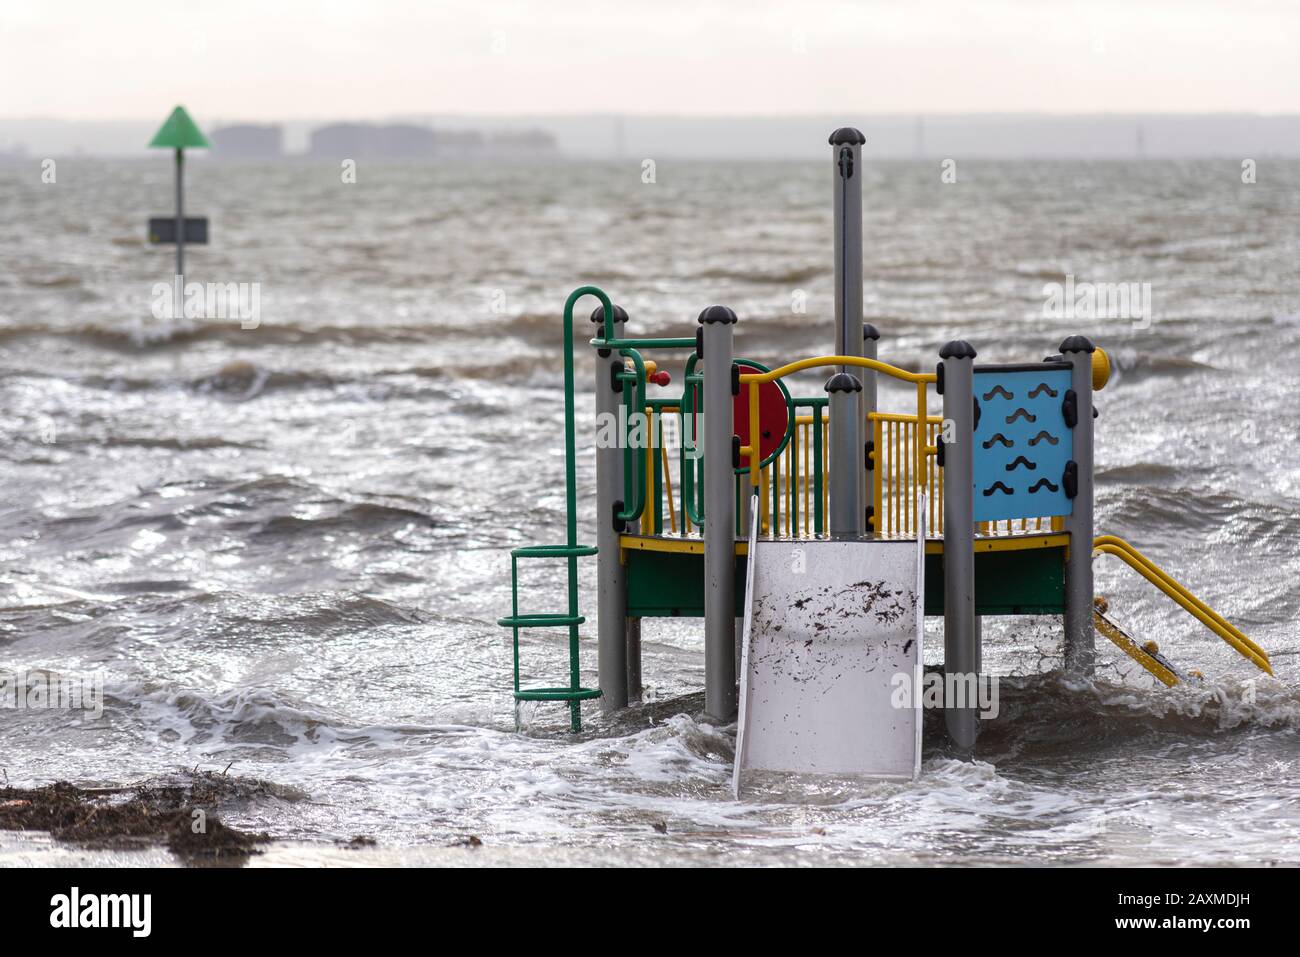 Rutsche auf dem Spielplatz, die während der Flut von Sturmfluten nach dem Sturm Ciara in Southend on Sea, Essex UK von Überschwemmungen heimgesucht wurde. Überfluteter Spielbereich unter Wasser Stockfoto